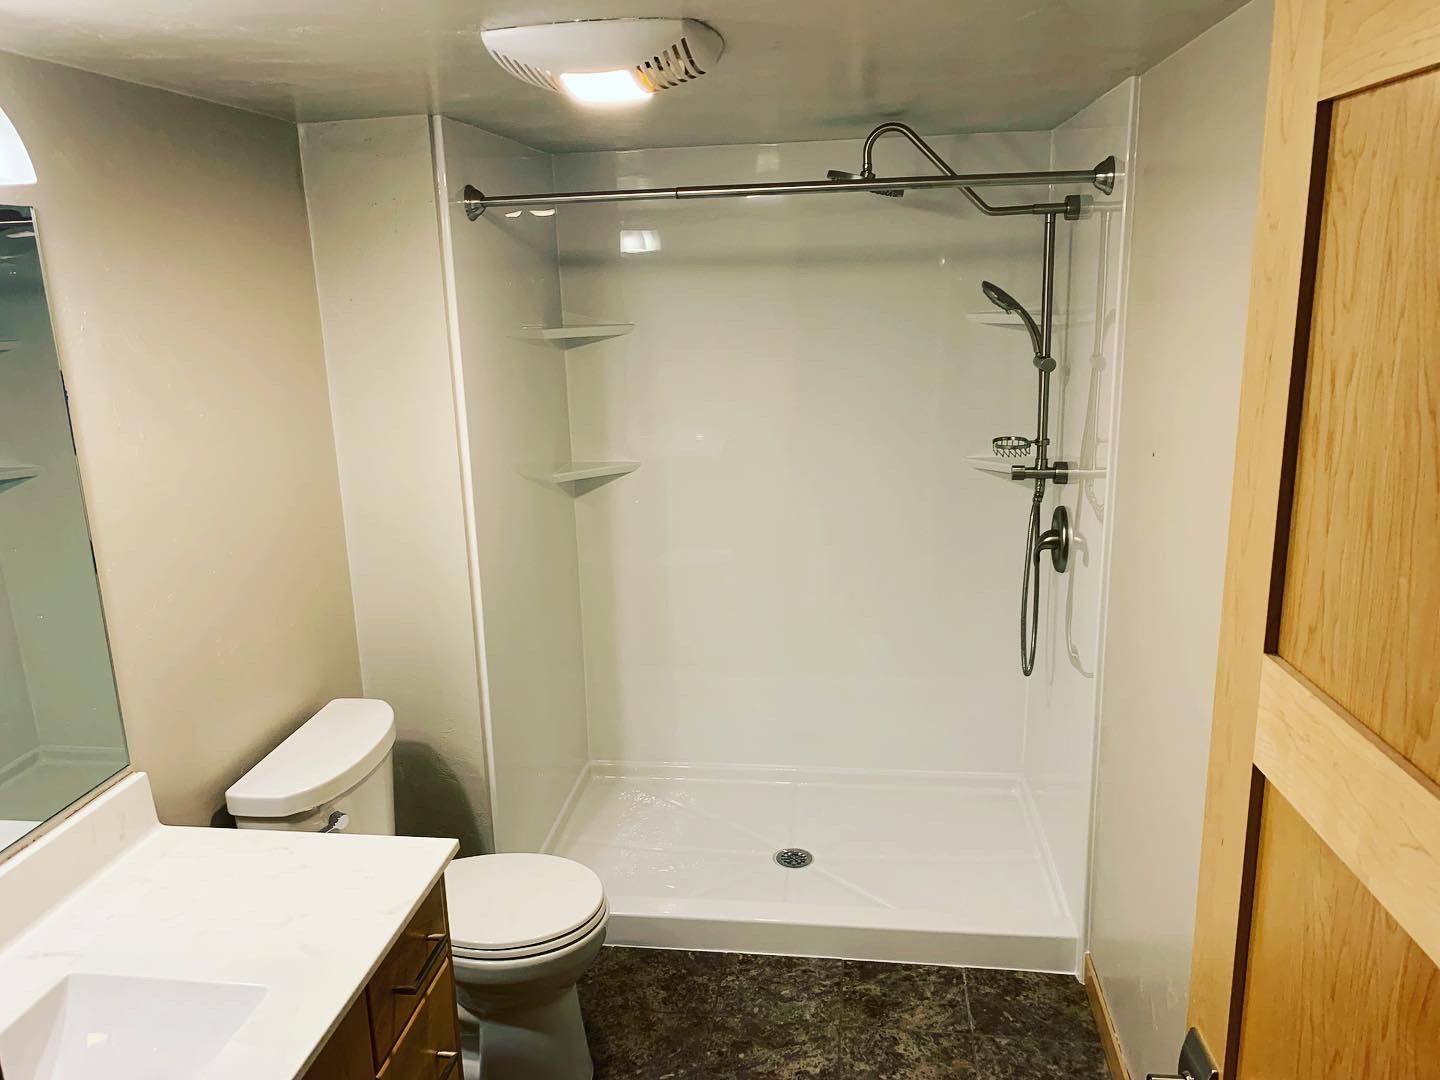 Bathroom After Remodel — Appleton, WI — Align Remodeling & Construction LLC